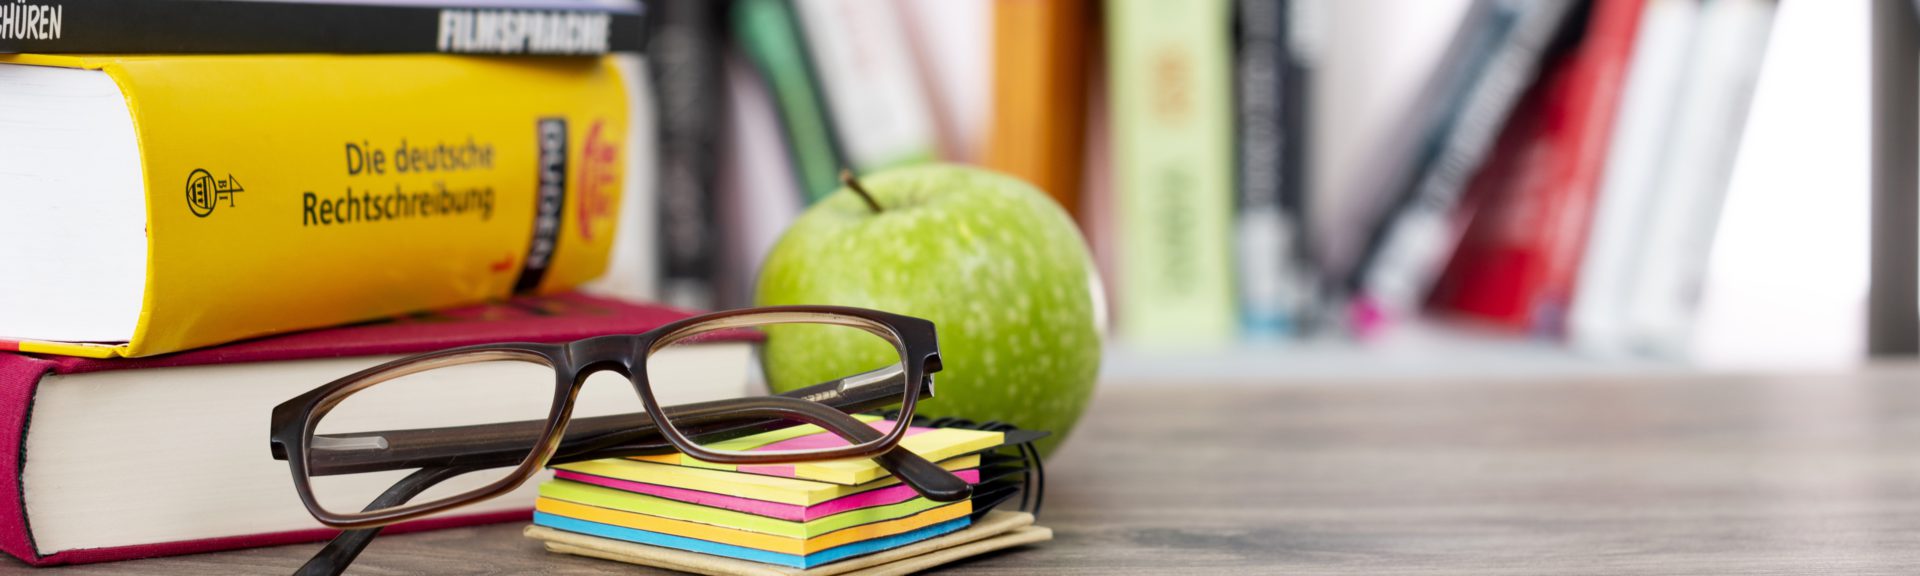 Auf einem Holztisch, der vor einem Bücherregal steht, befinden sich links drei weitere Bücher. Davor befinden sich ein Stapel Haftnotizzettel, eine zusammengeklappte Brille und ein grüner Apfel.